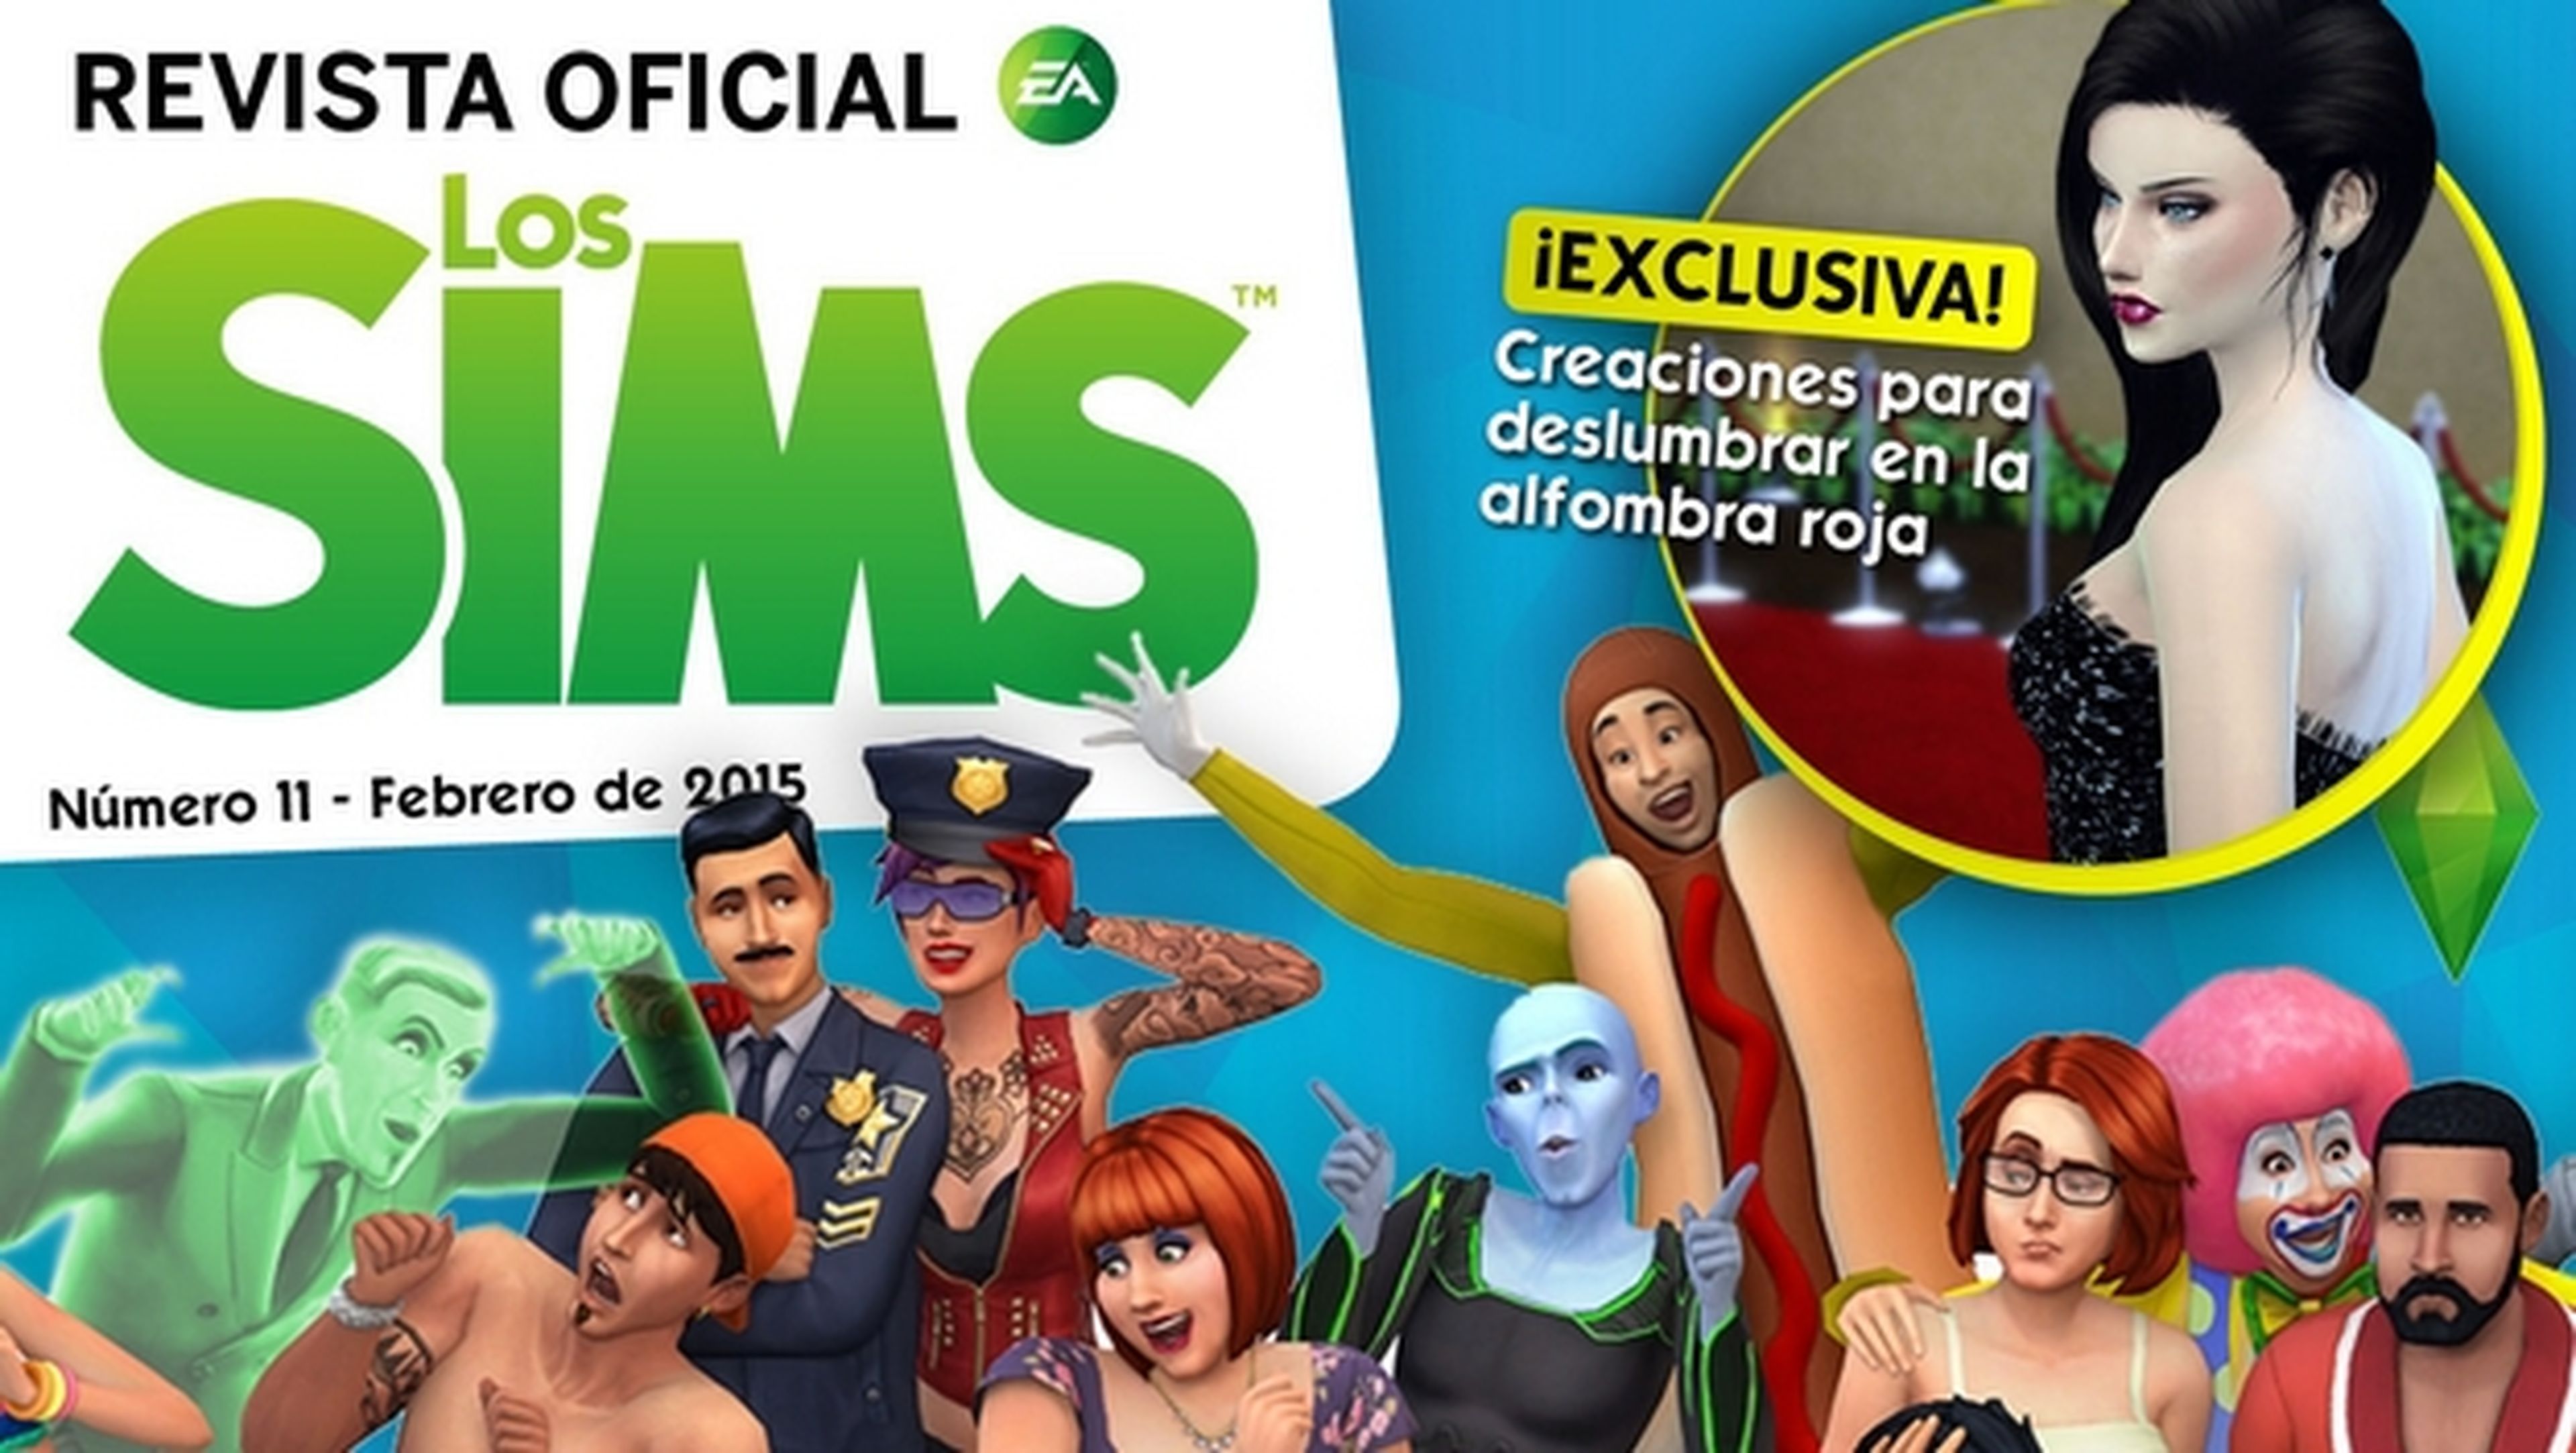 Revista oficial de los Sims Número 11 incluye un vestido exclusivo para la gran fiesta del cine.